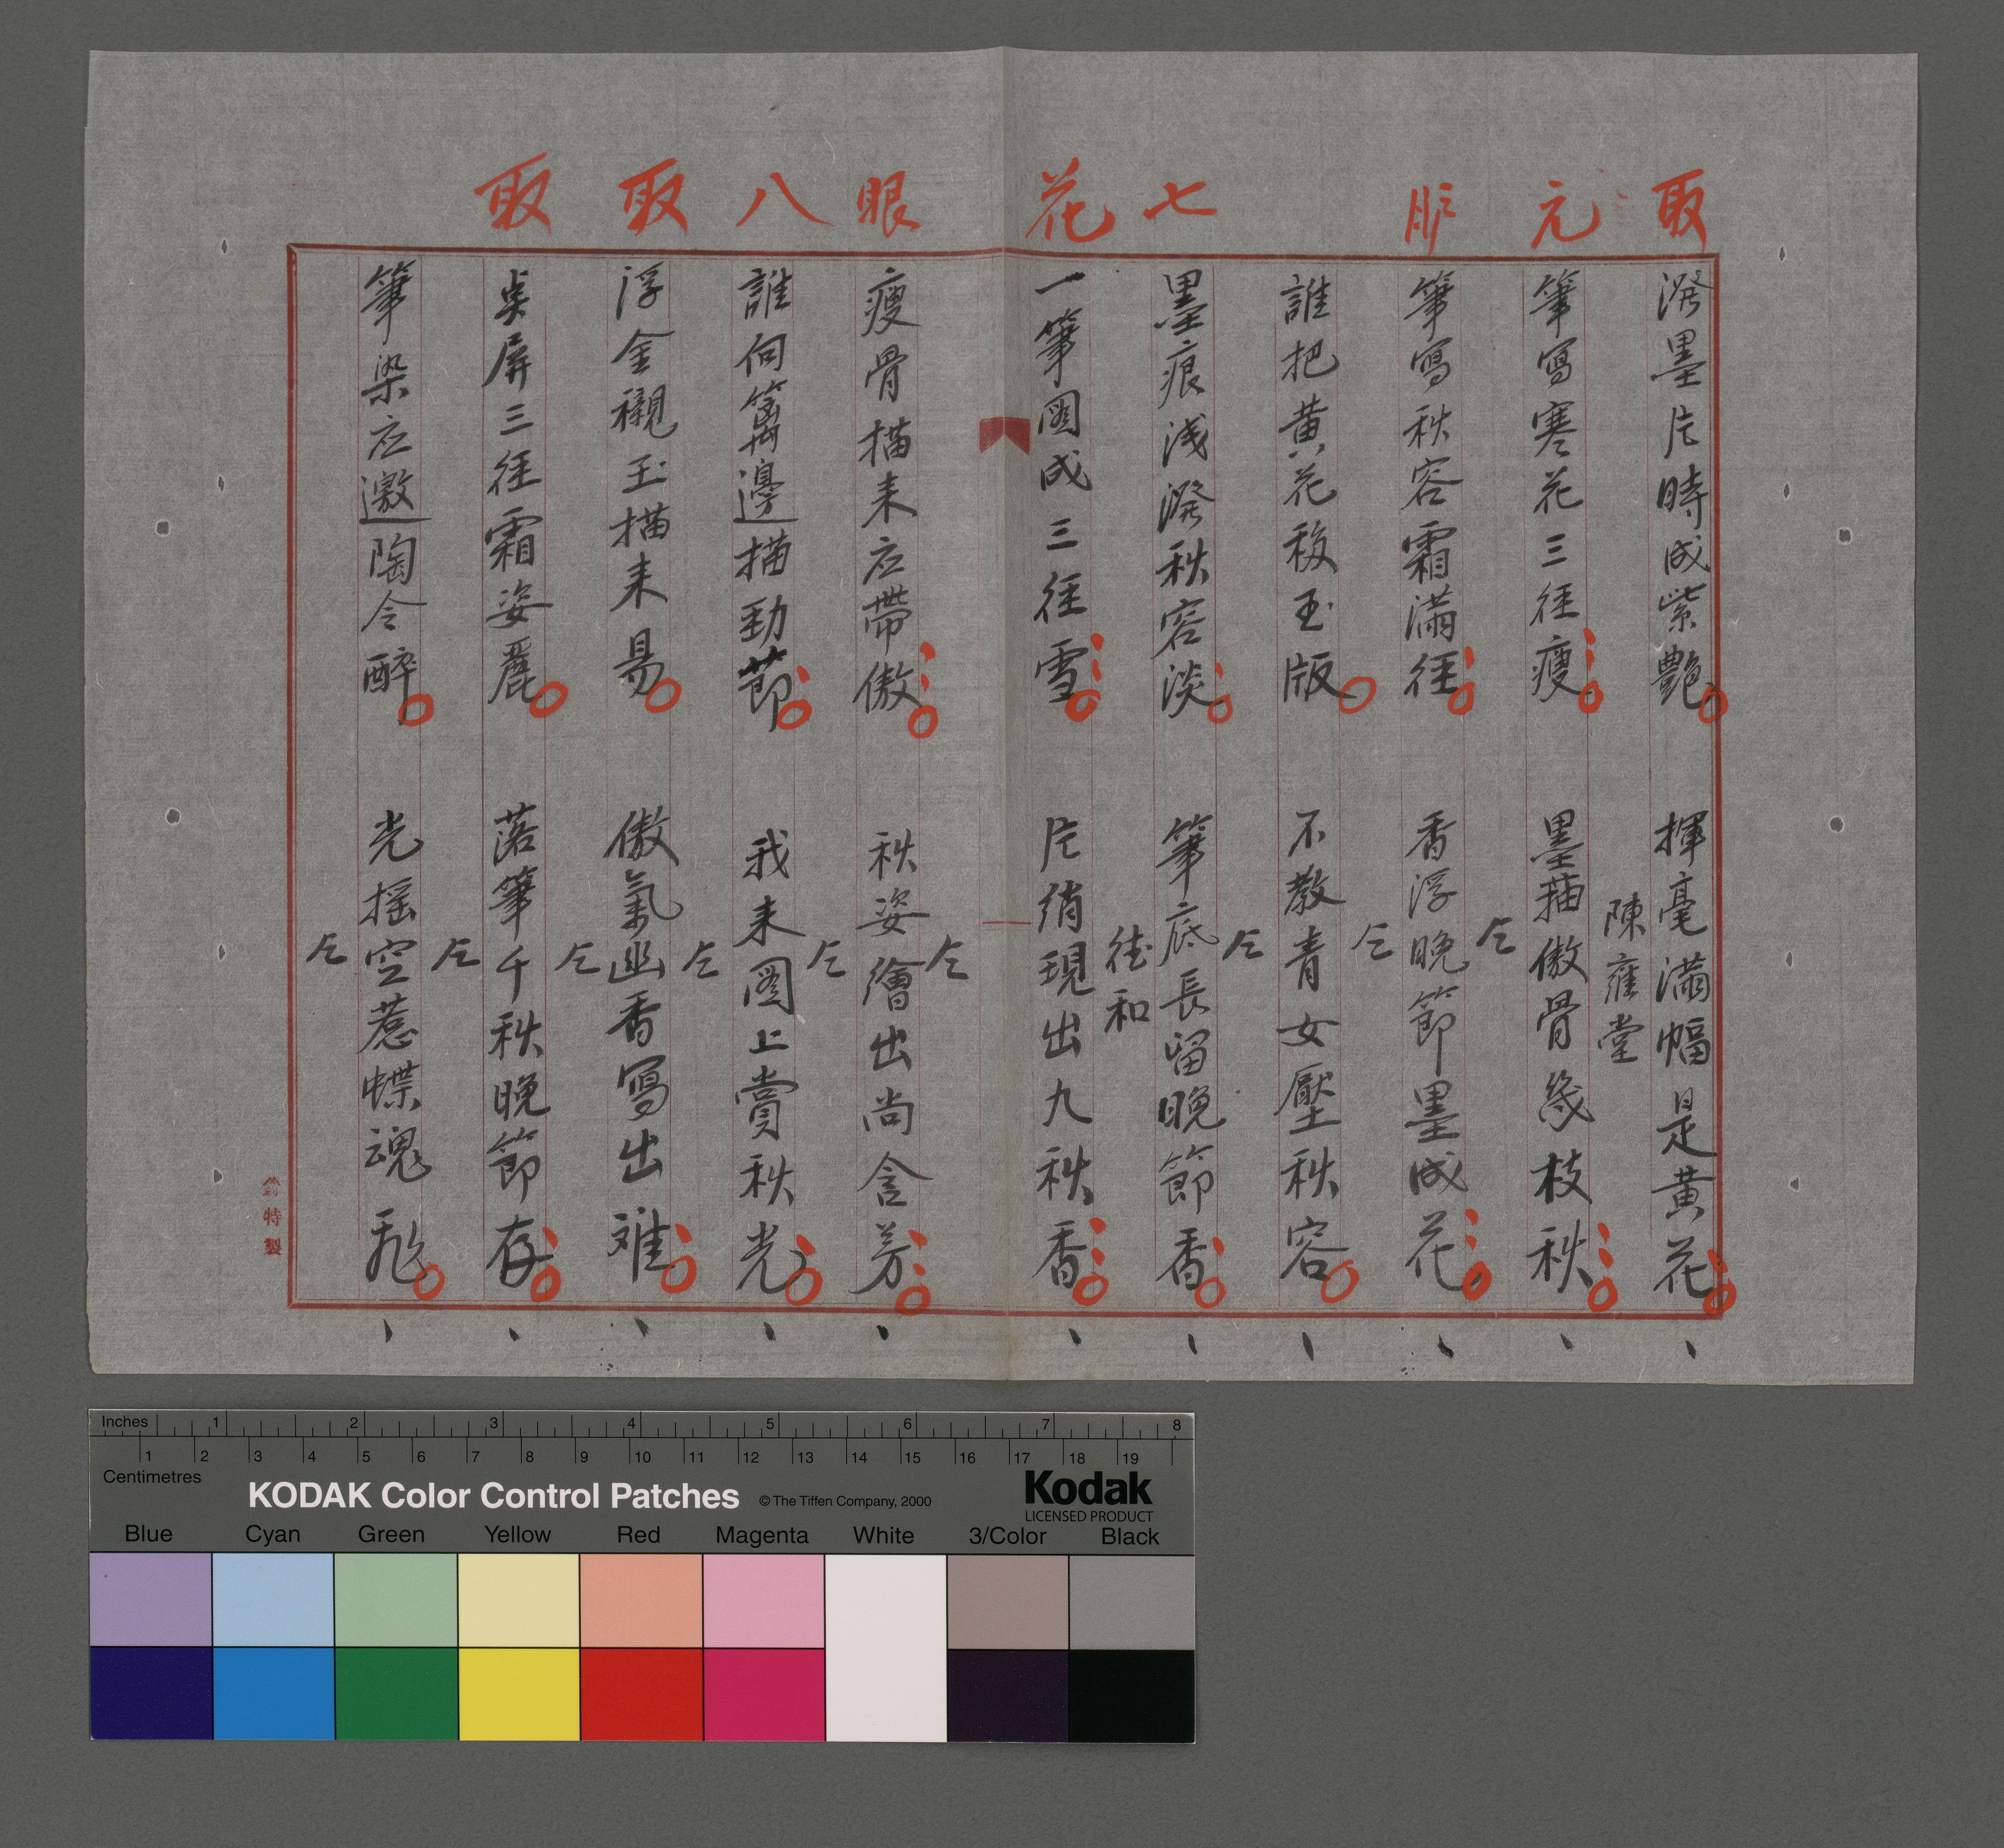 昭和貳年花月日菼社詩鐘抄錄第八期-画菊（數位財產編(3826787)